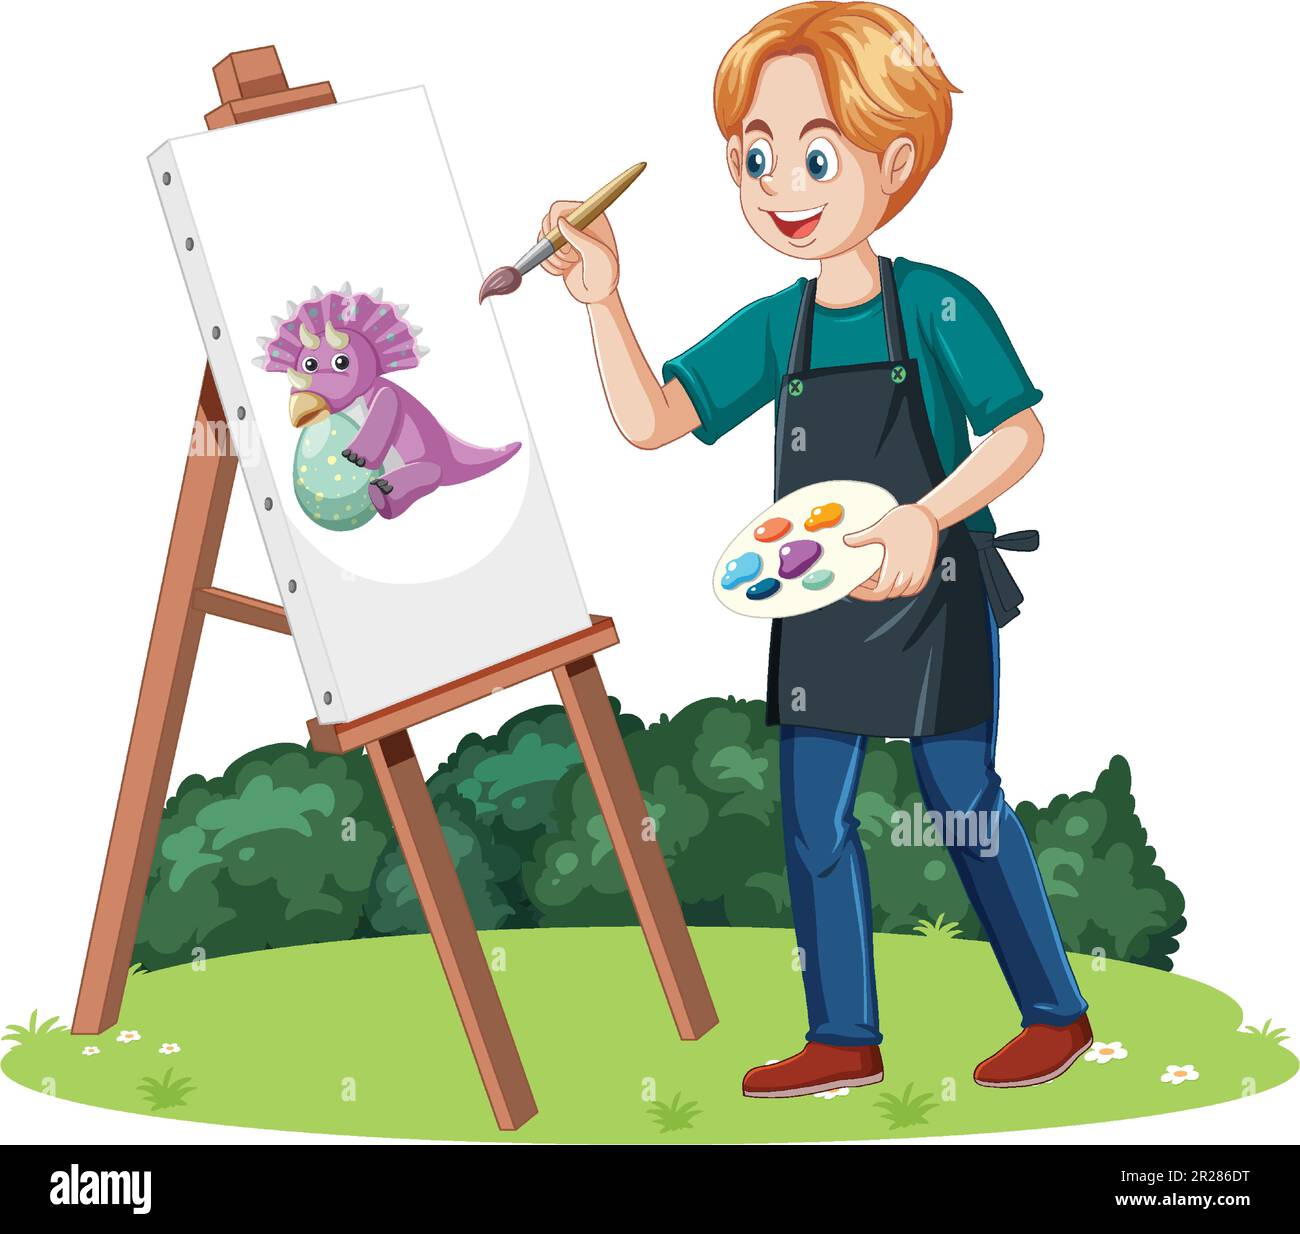 Homme peinture dinosaure à l'illustration du jardin Illustration de Vecteur